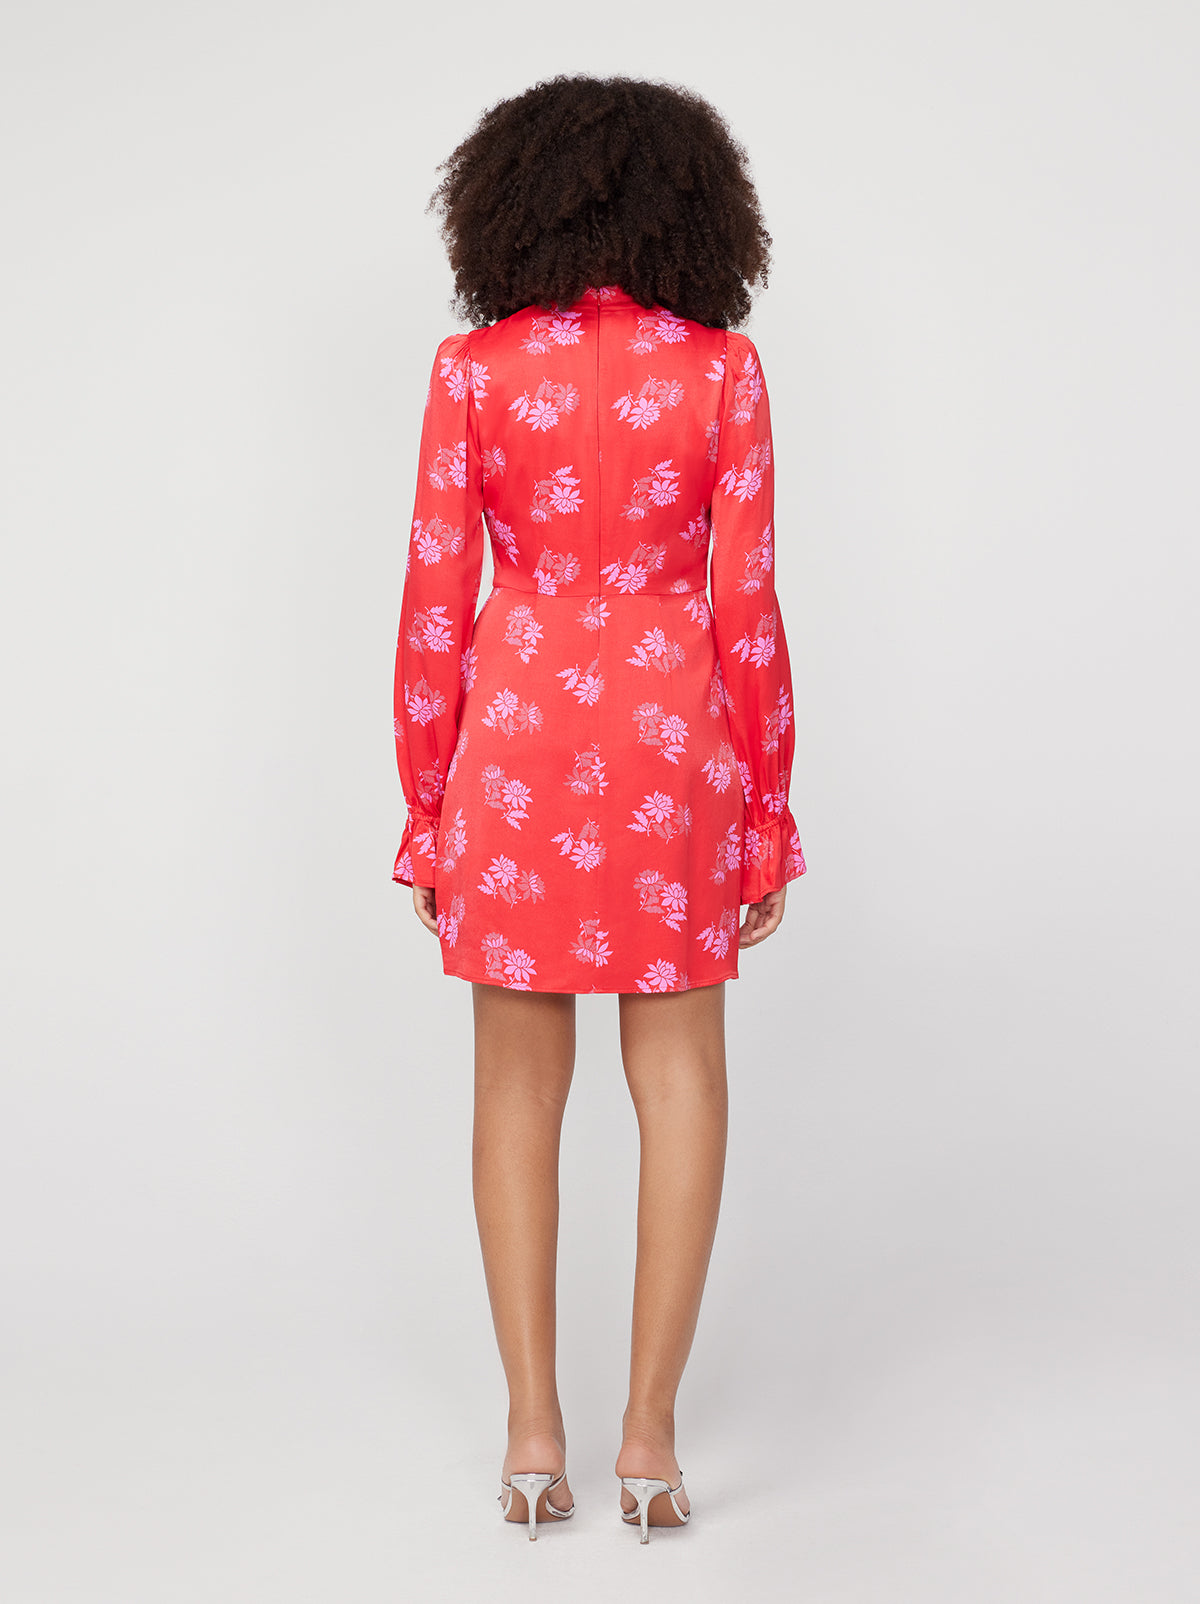 Valentina Red Floral Mini Dress By KITRI Studio